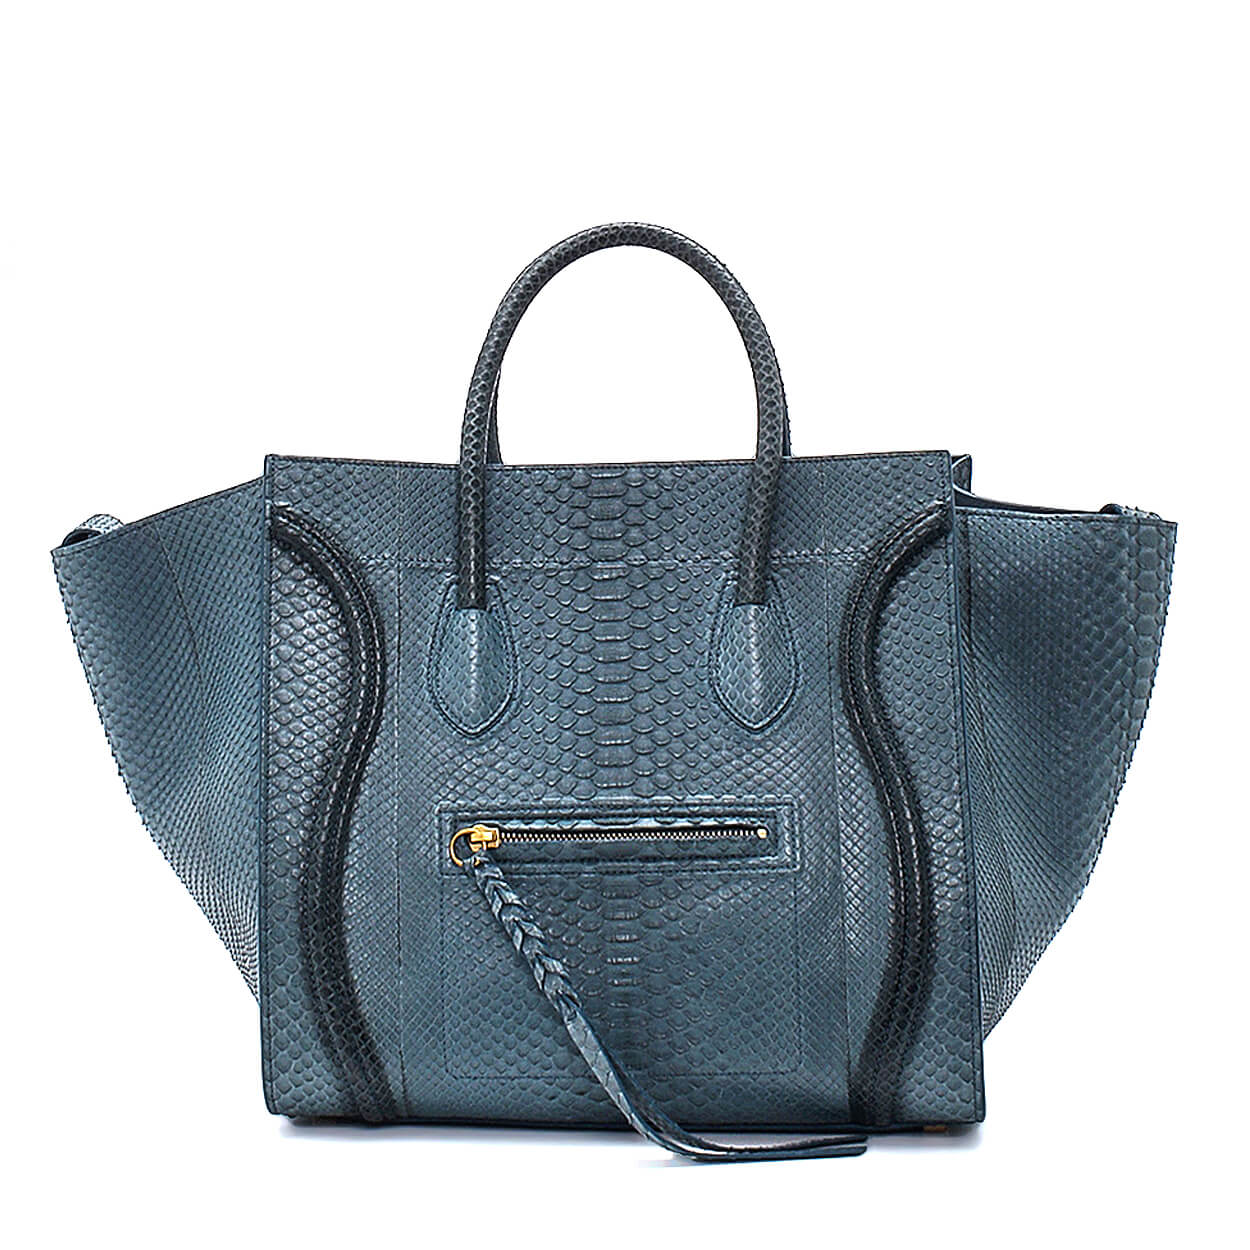 Celine - Blue Exotic Leather Phantom Luggage Bag